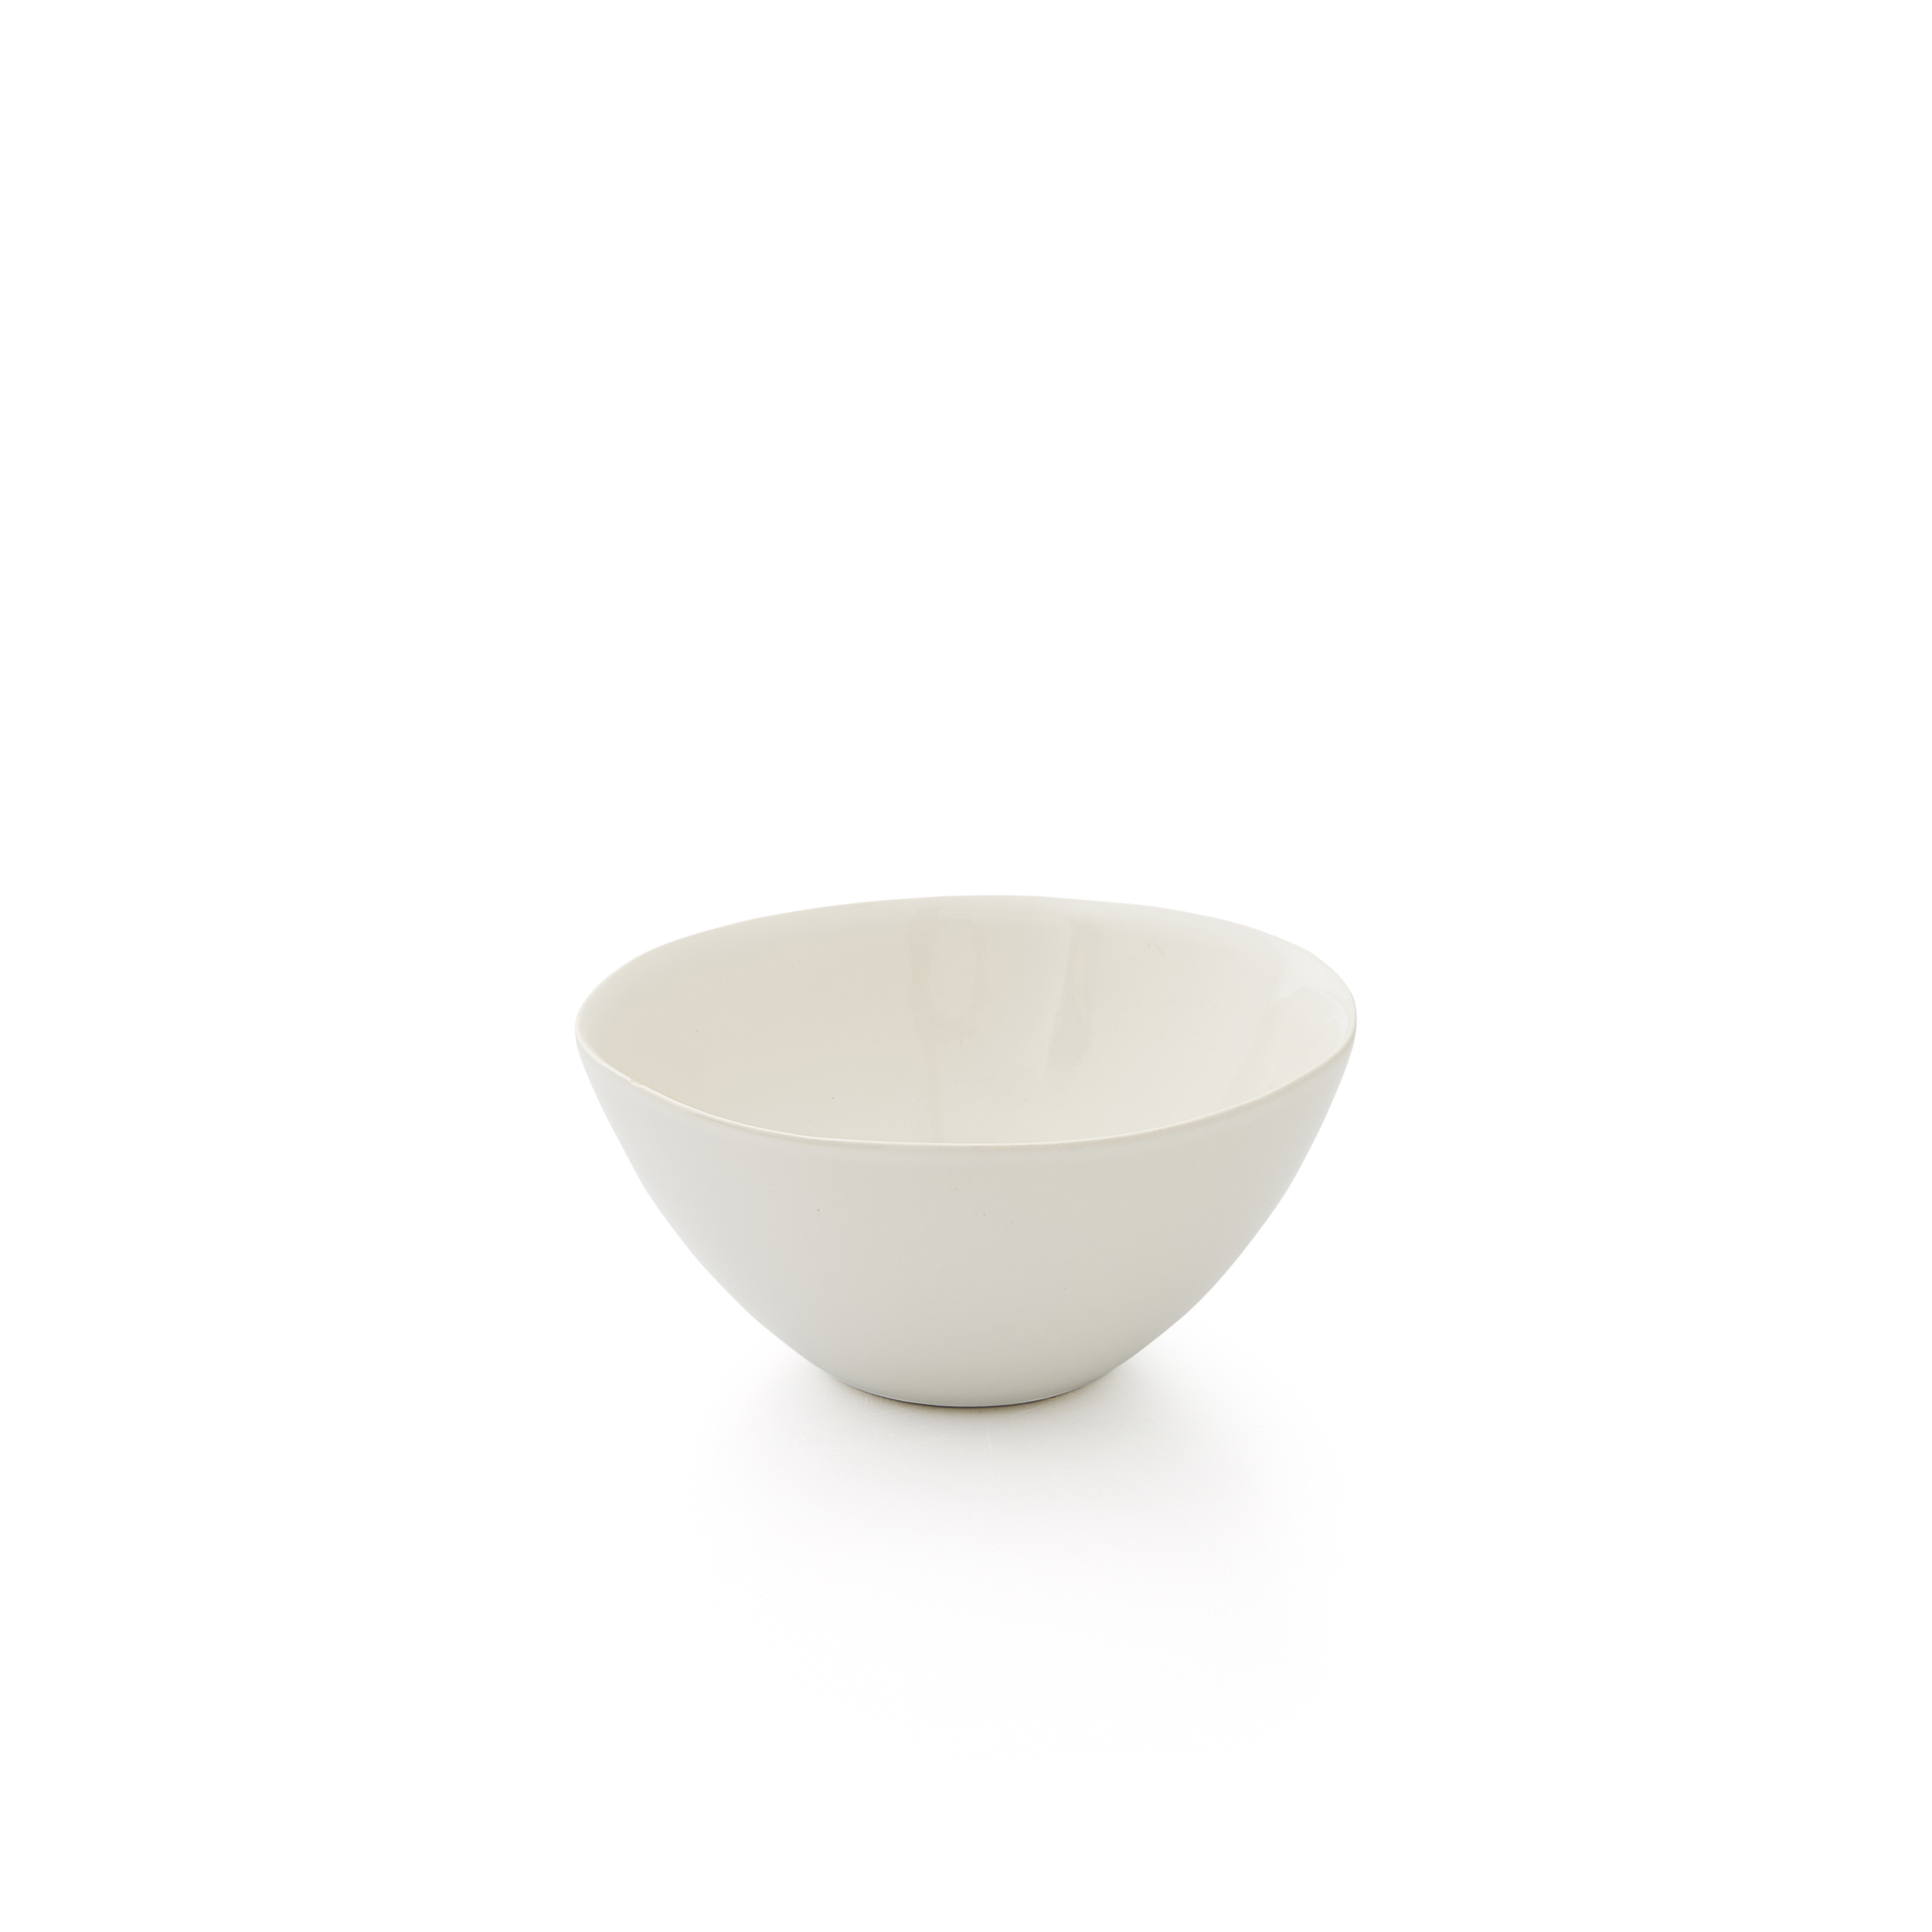 Sophie Conran Arbor bowl, Cream image number null